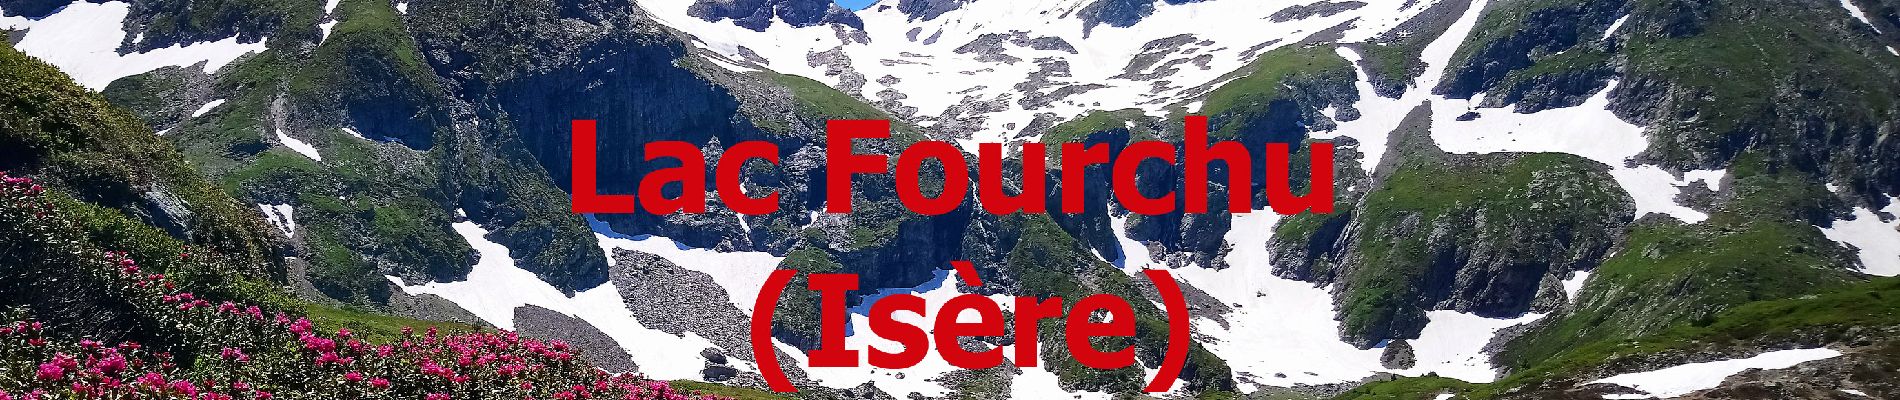 Excursión Senderismo Livet-et-Gavet - Lac fourchu 2 - valette - Description et vidéo - Photo